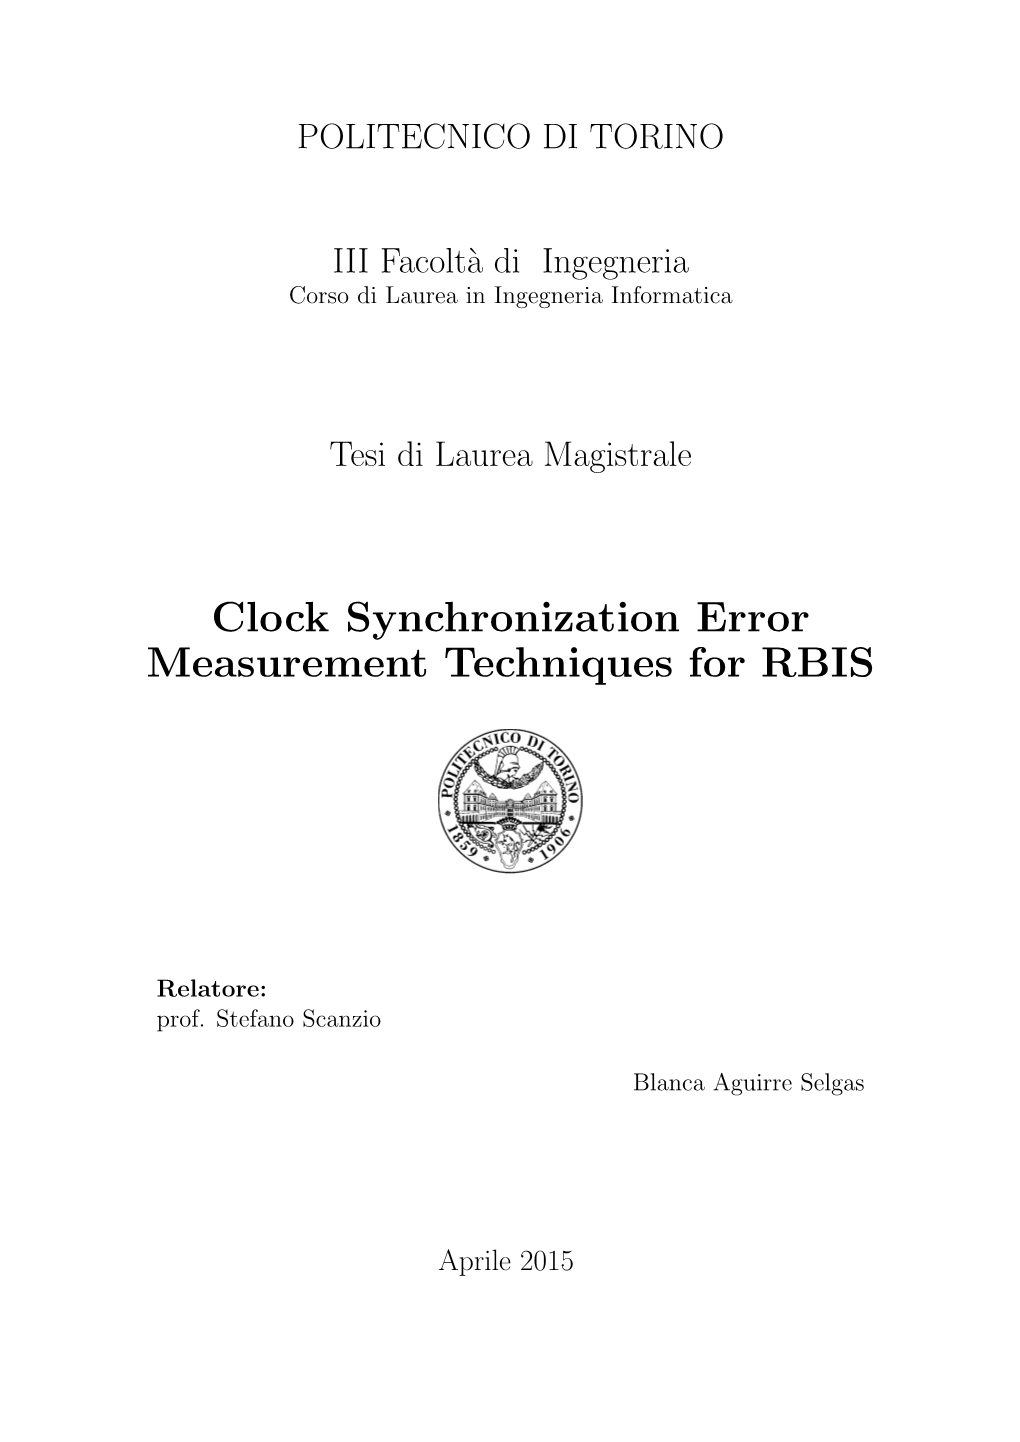 Clock Synchronization Error Measurement Techniques for RBIS